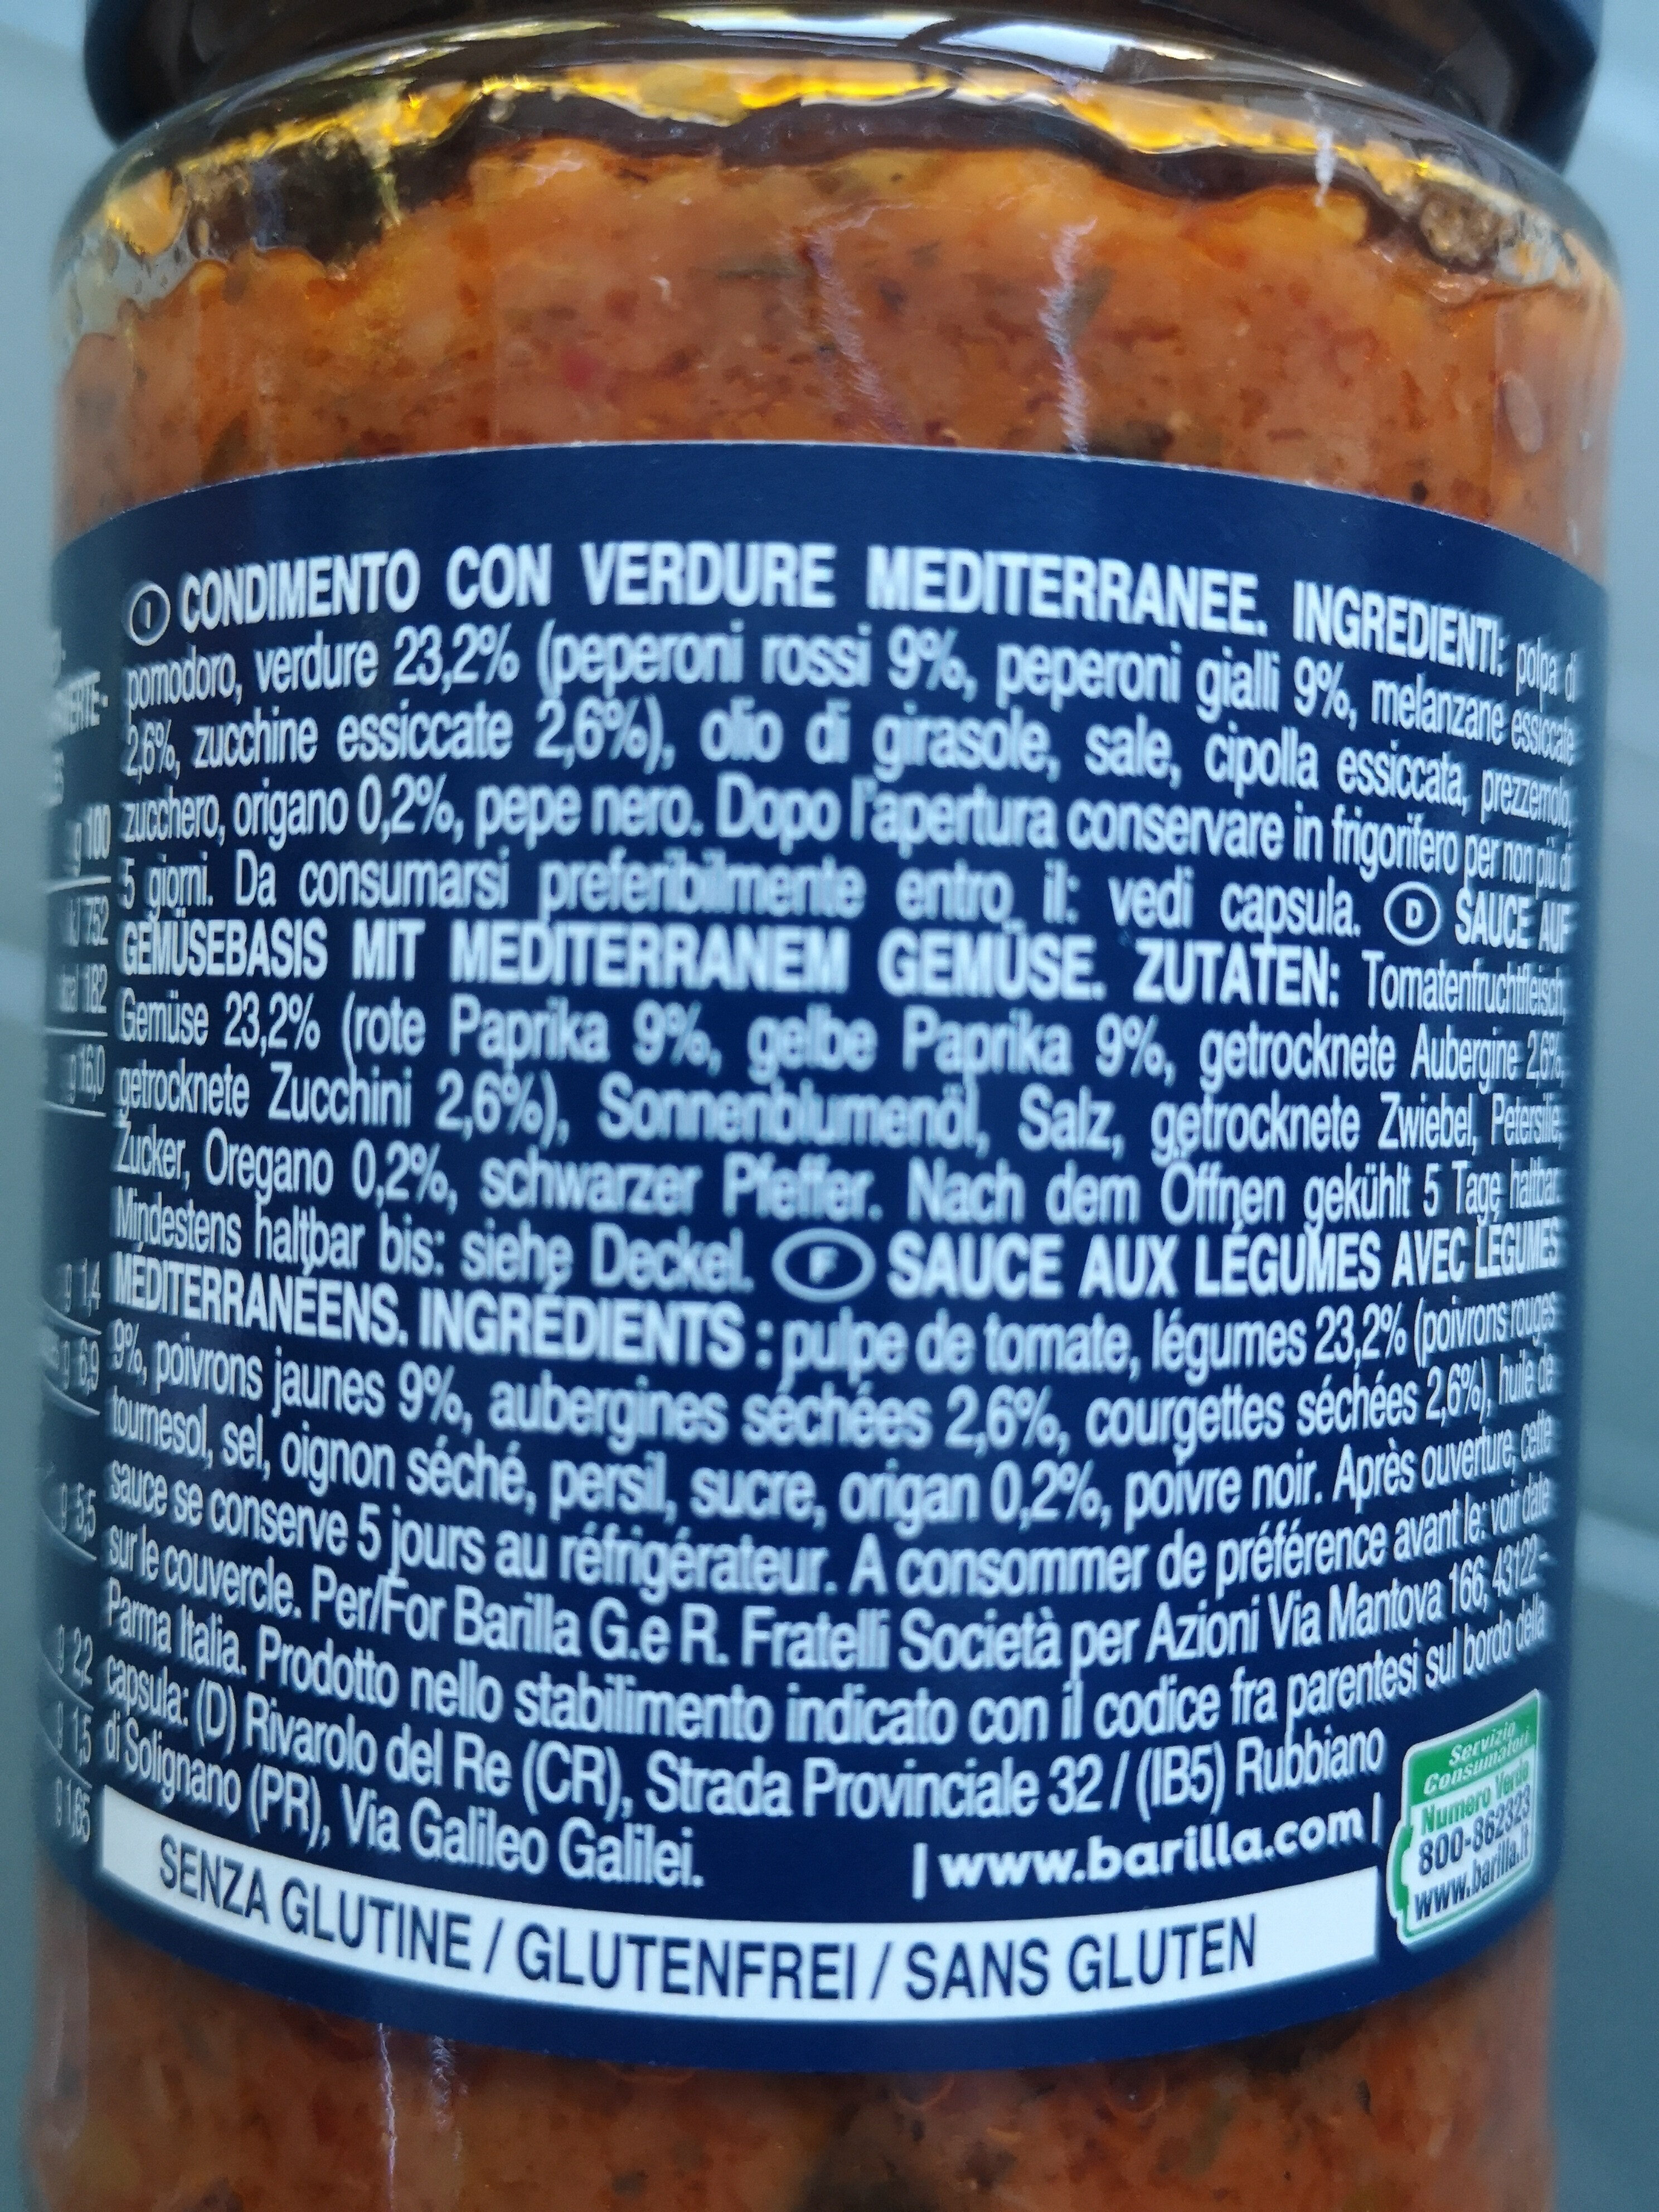 Sauce auf Gemüsebasis mit Mediterranen Gemüse - Ingrediënten - fr